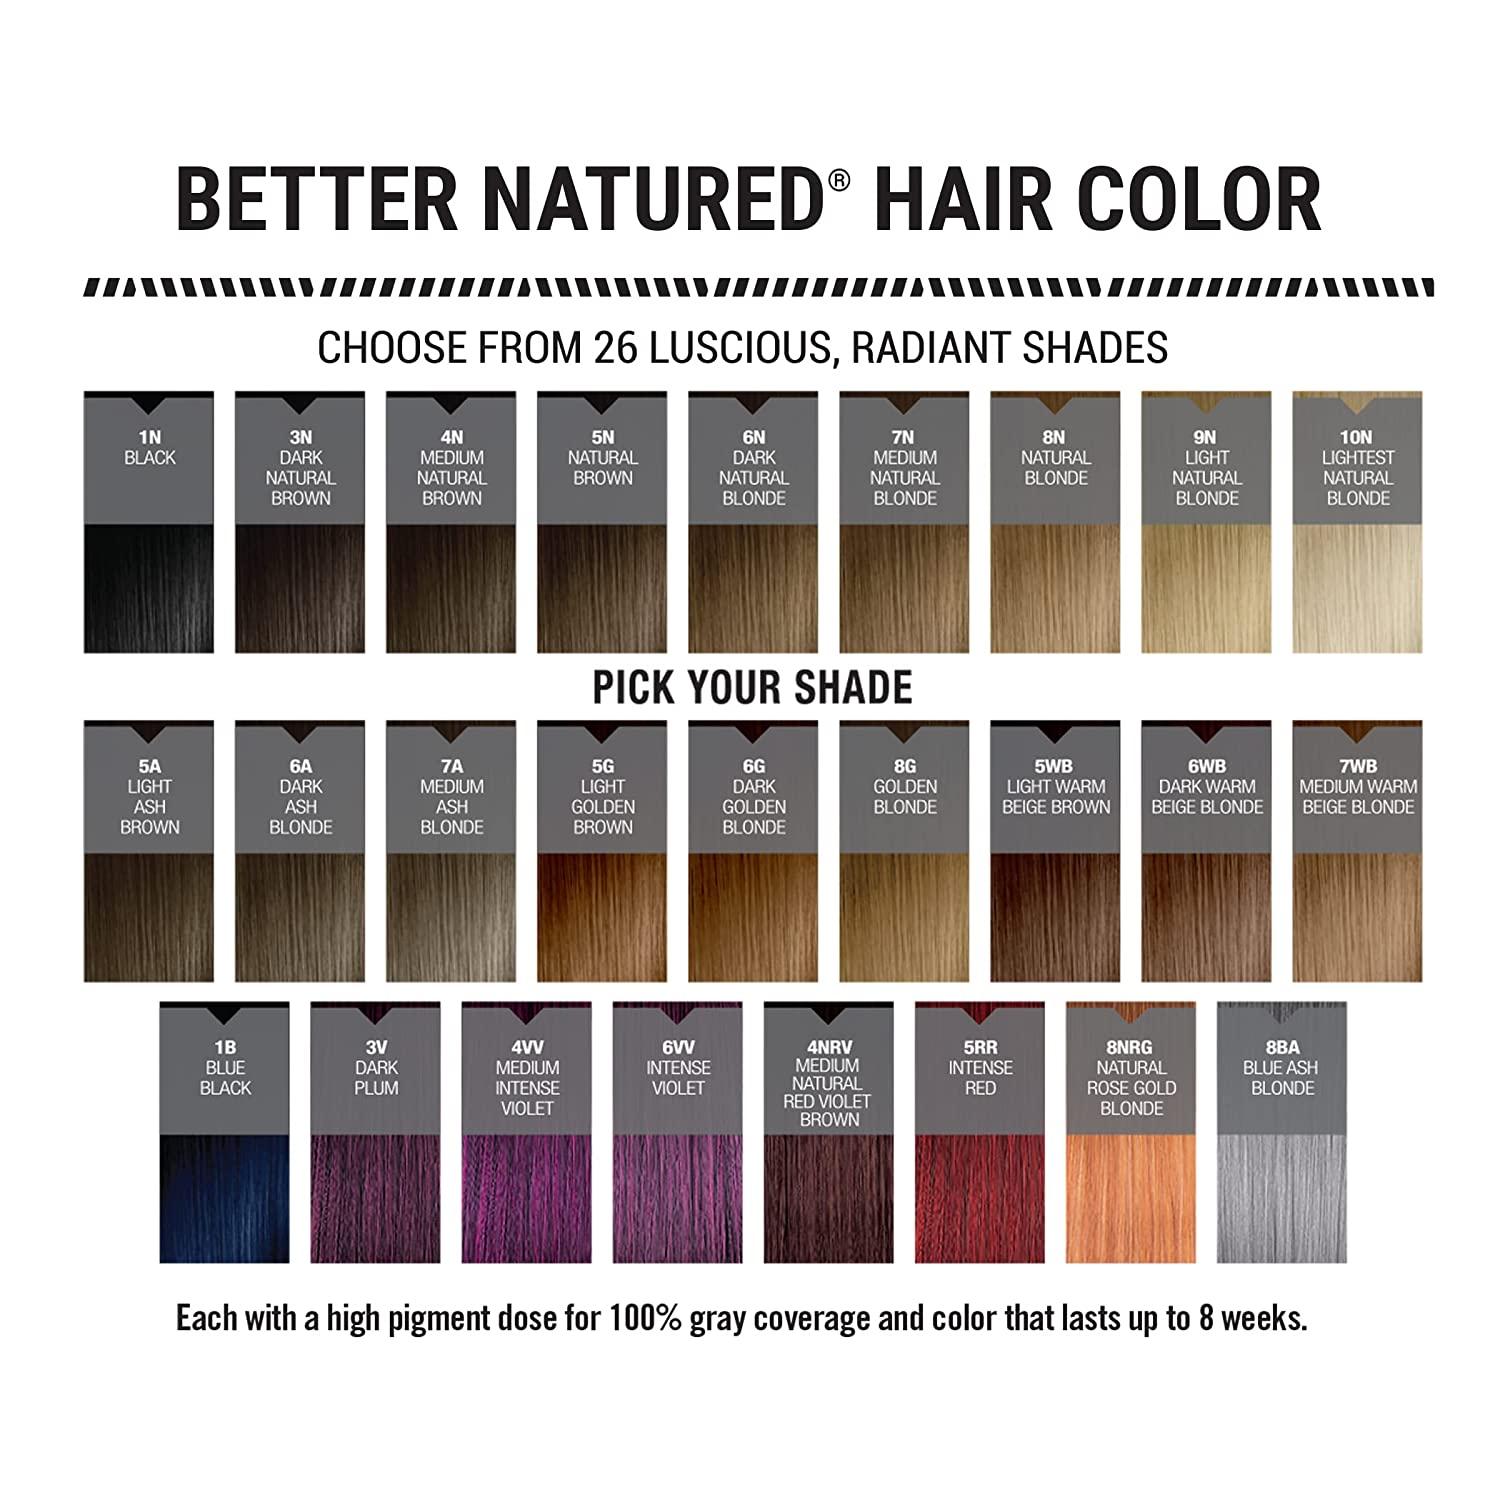  Better Natured 3V Dark Plum Permanent Hair Color Dye